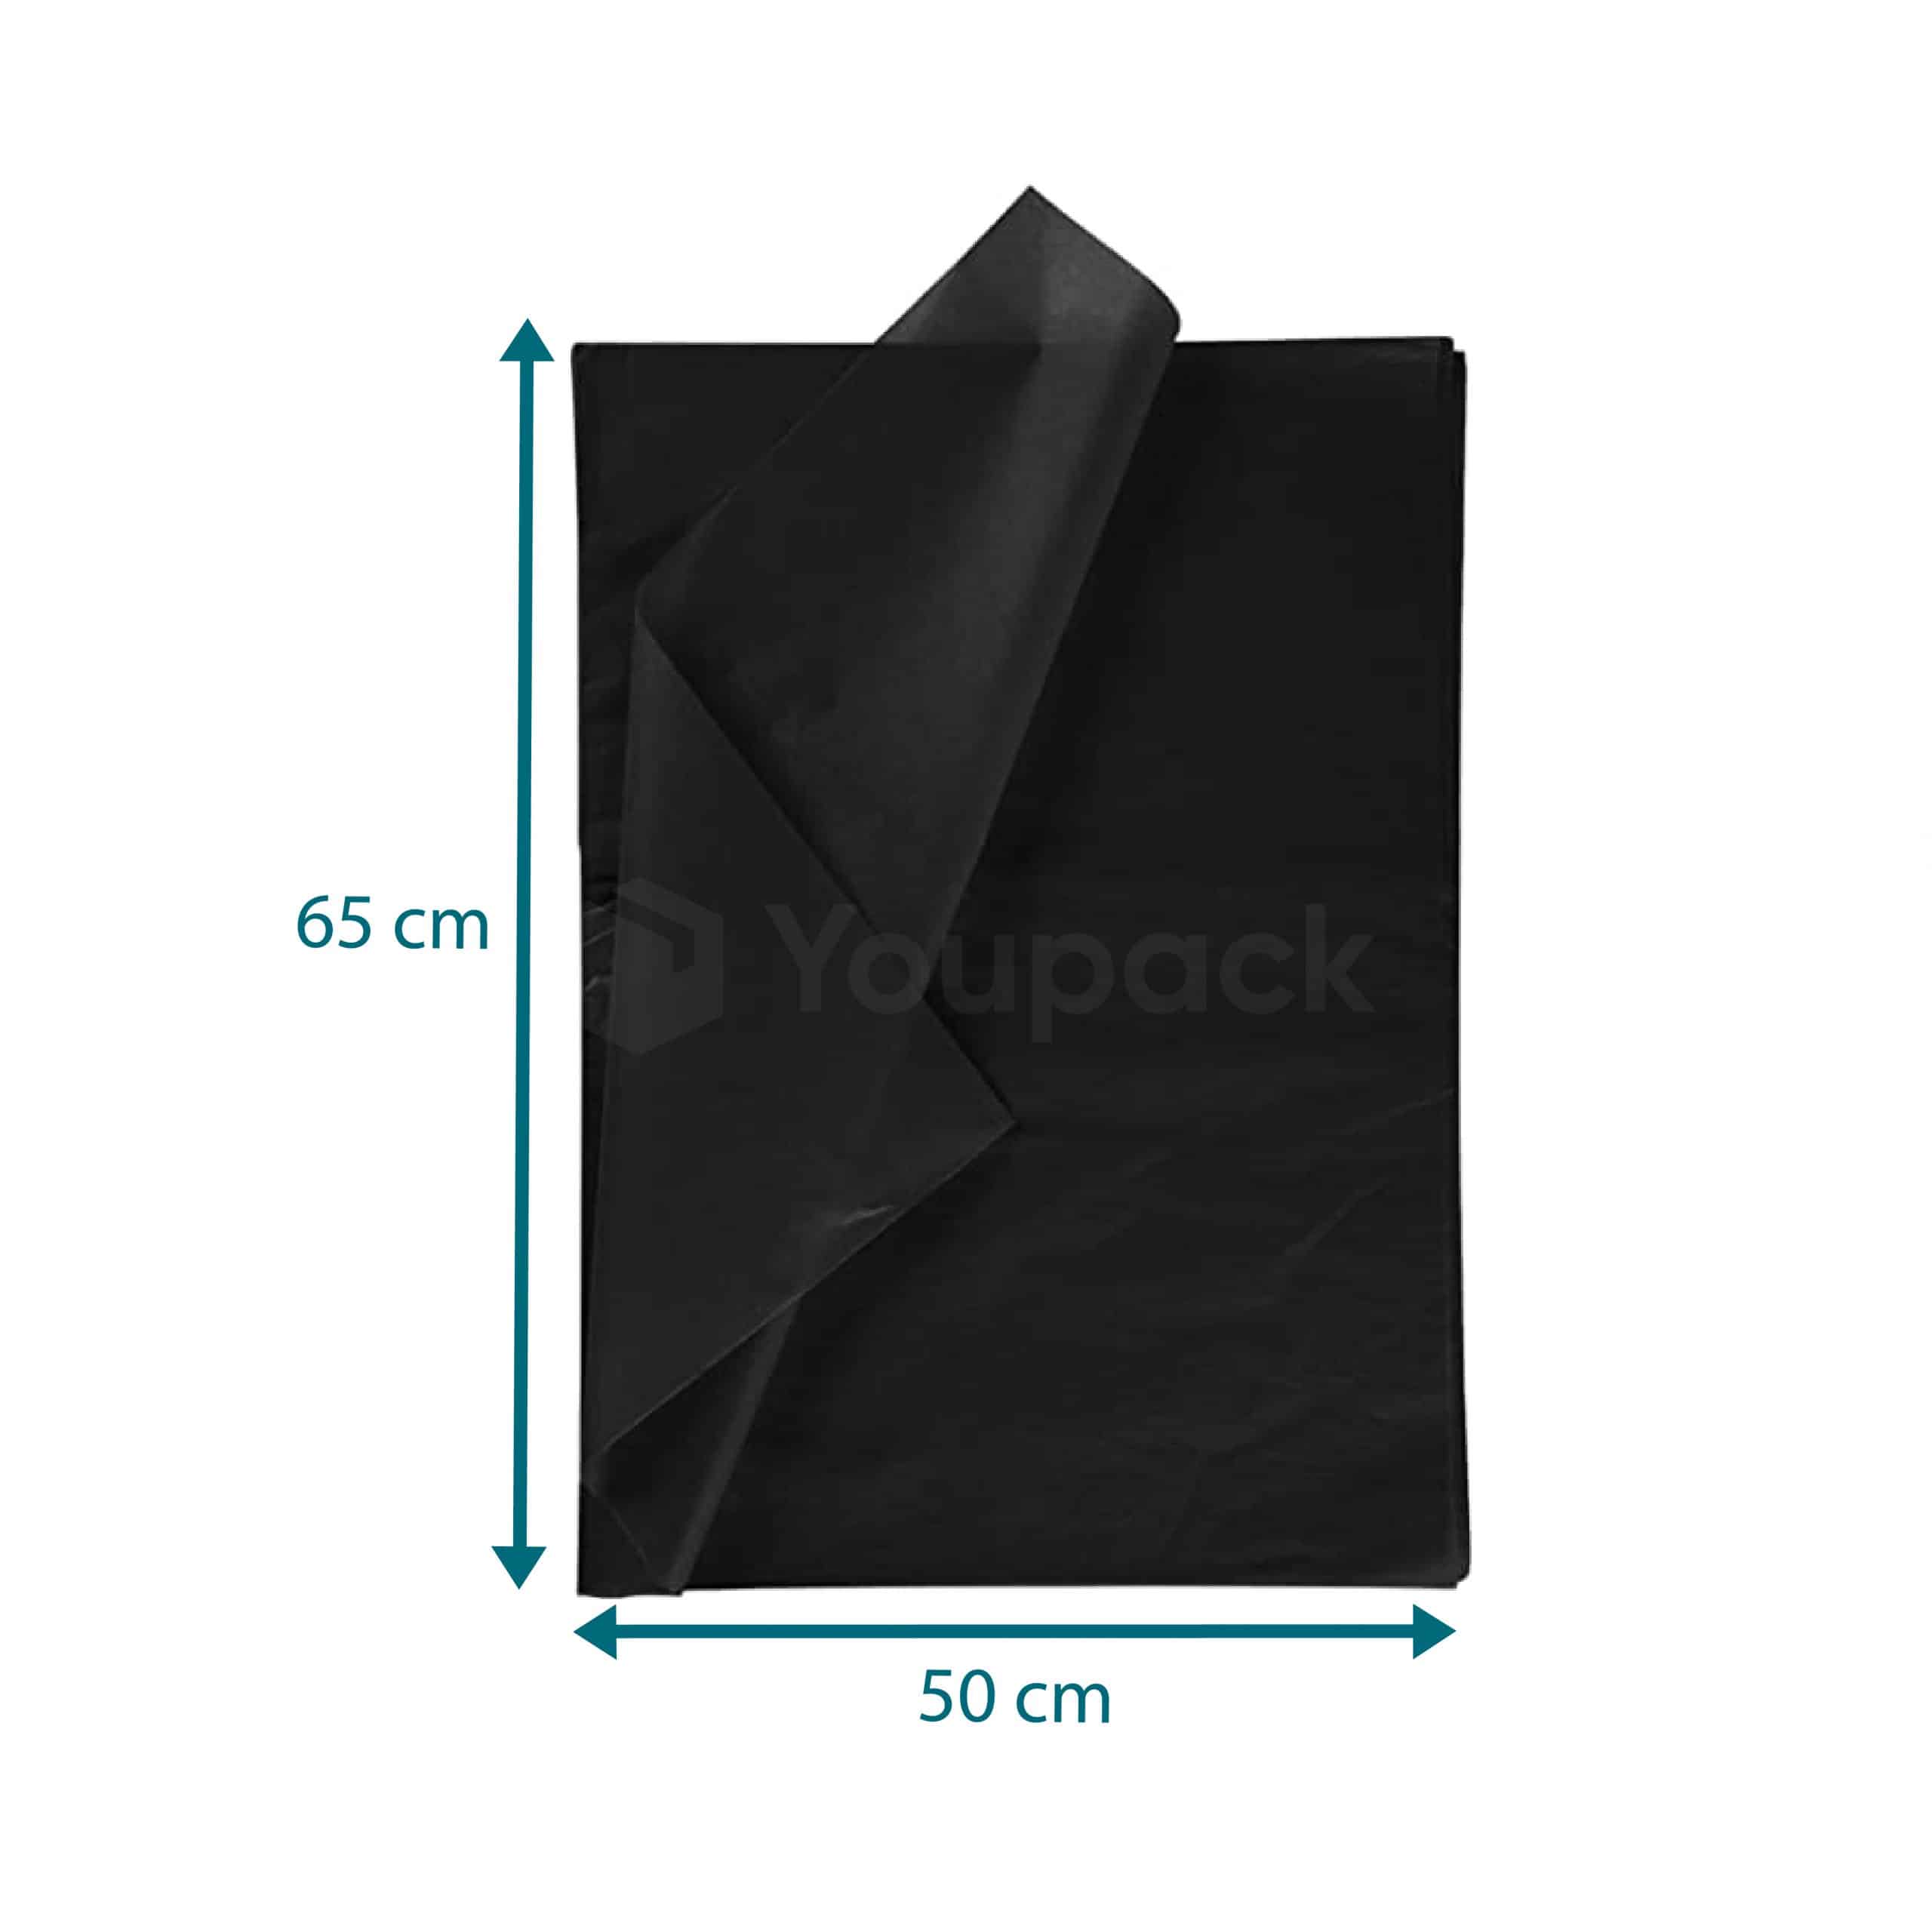 Mousse de Protection 3mm - 1.2x30m - Youpack